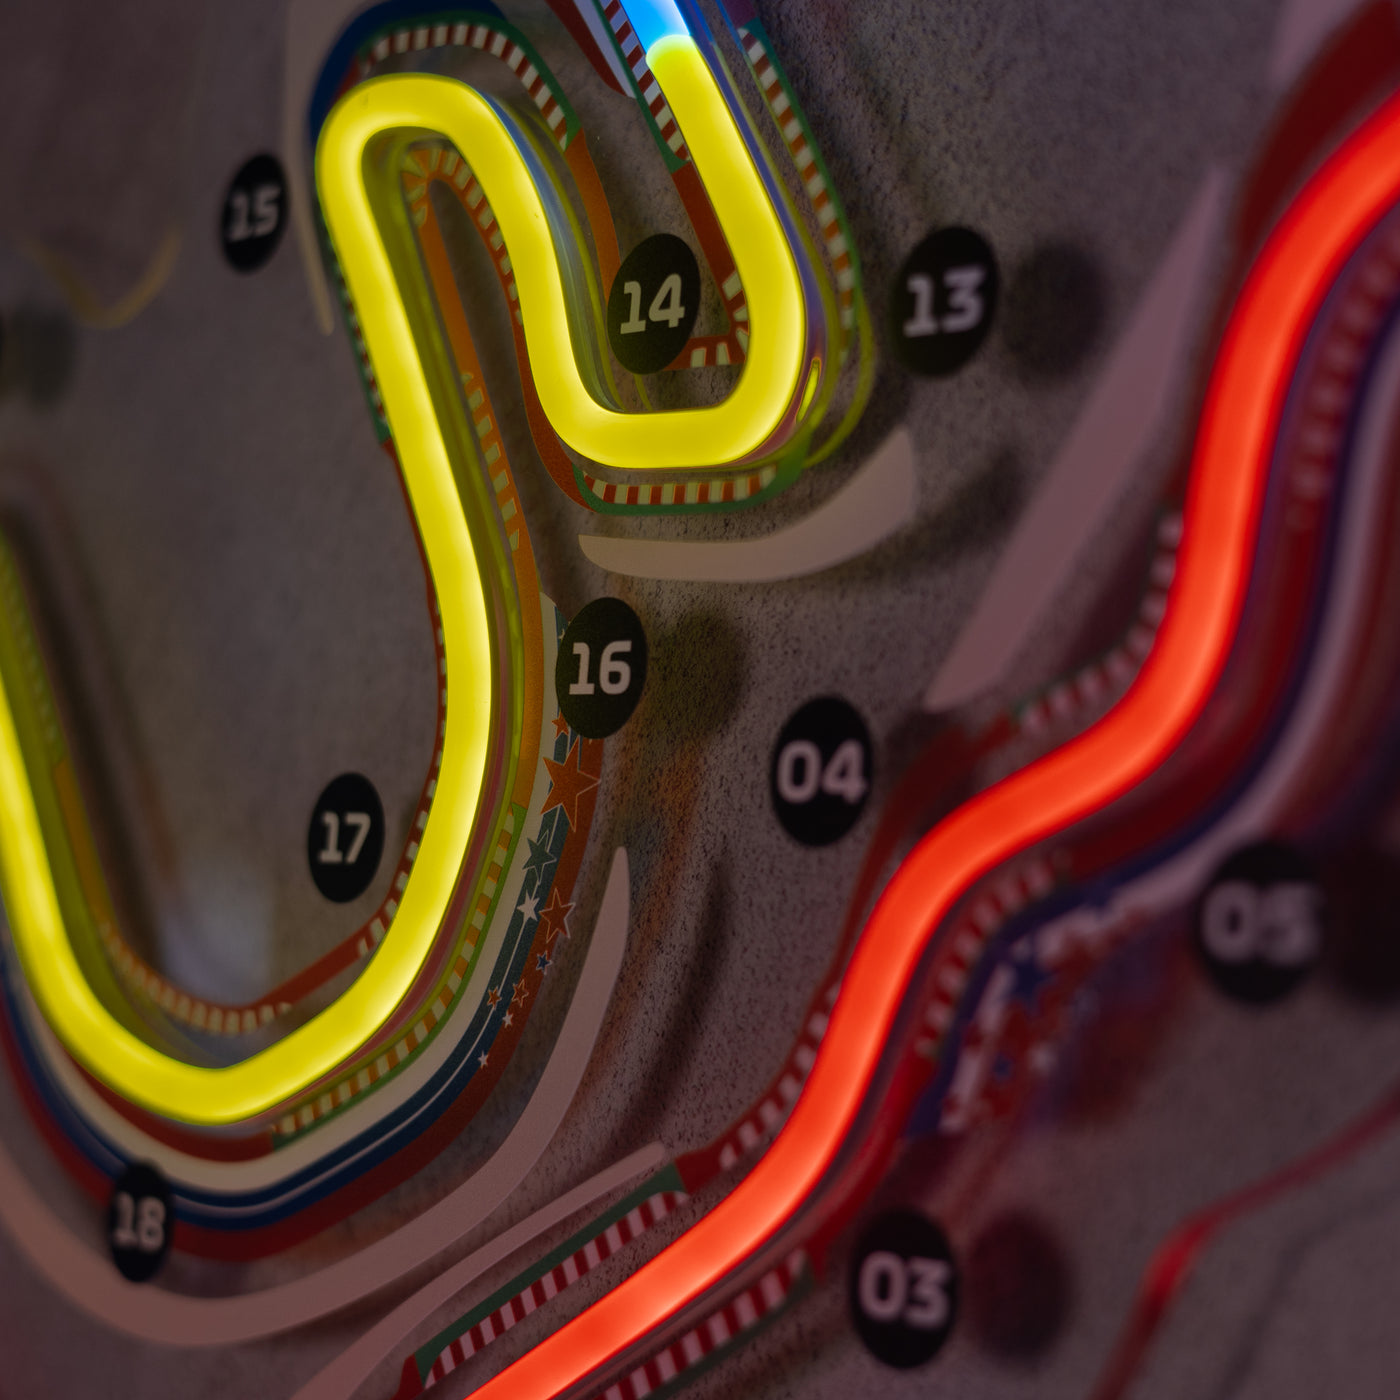 Circuit De Barcelona-Catalunya Neon Race Track